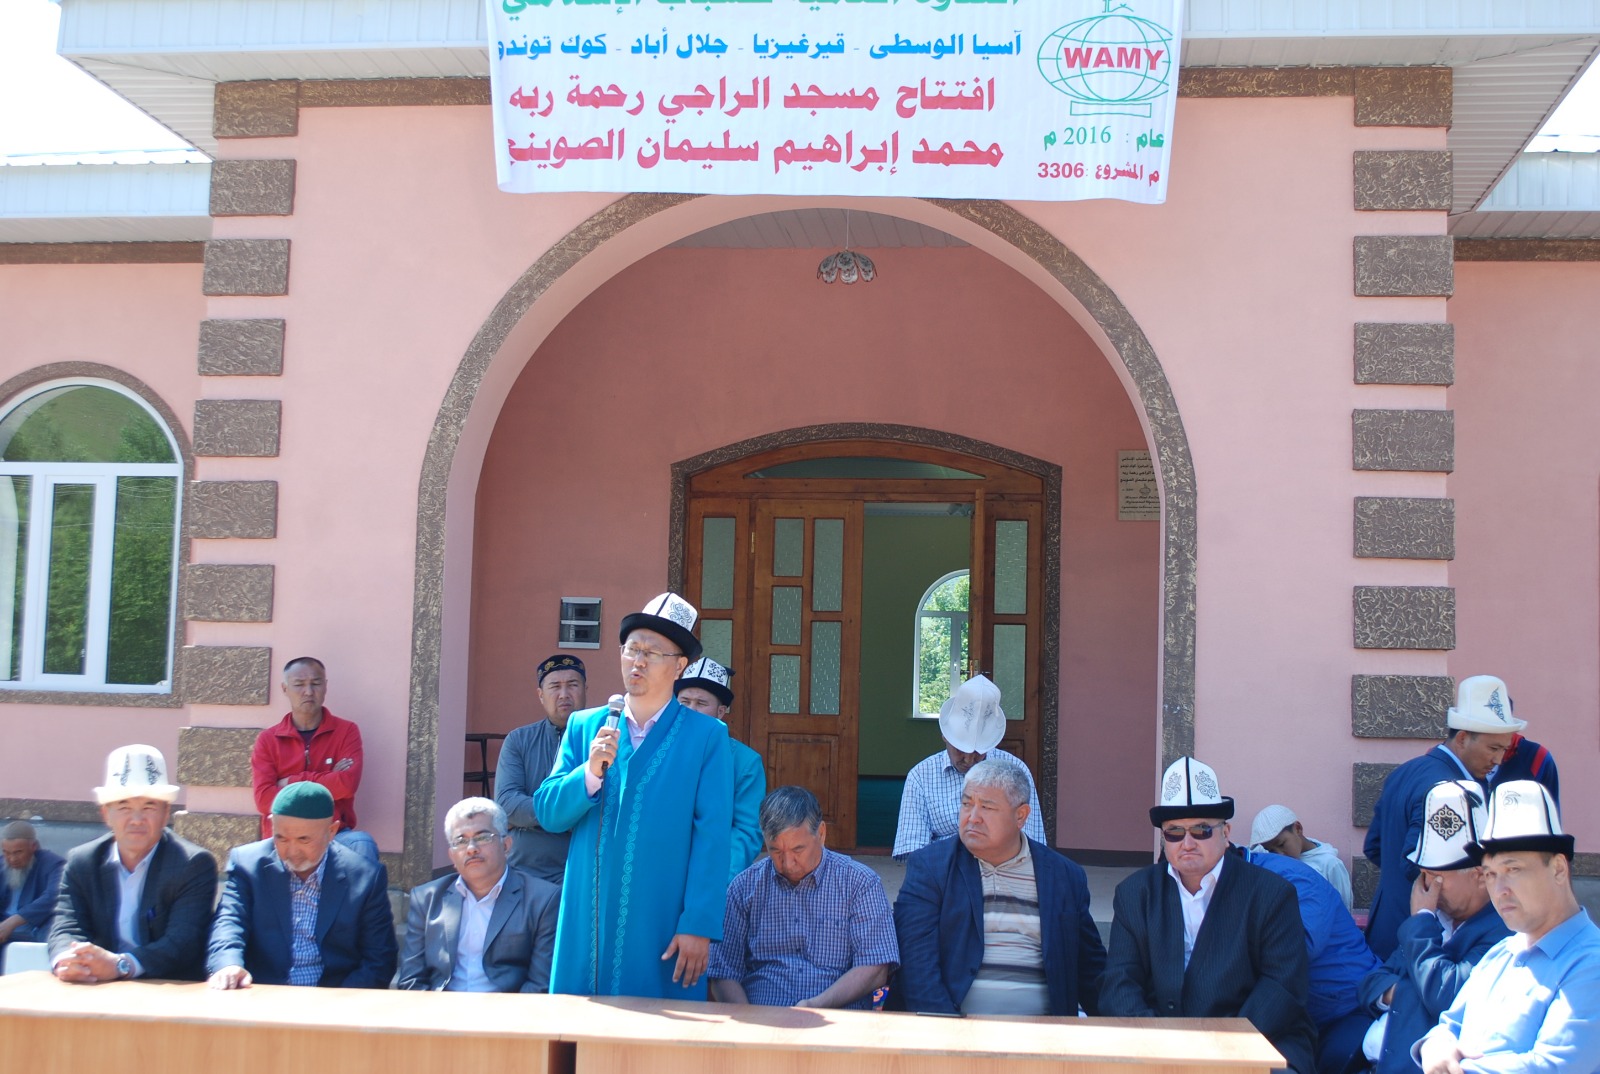 الندوة العالمية للشباب الإسلامي تفتتح مسجداً جديداً في جنوب قيرغيزيا